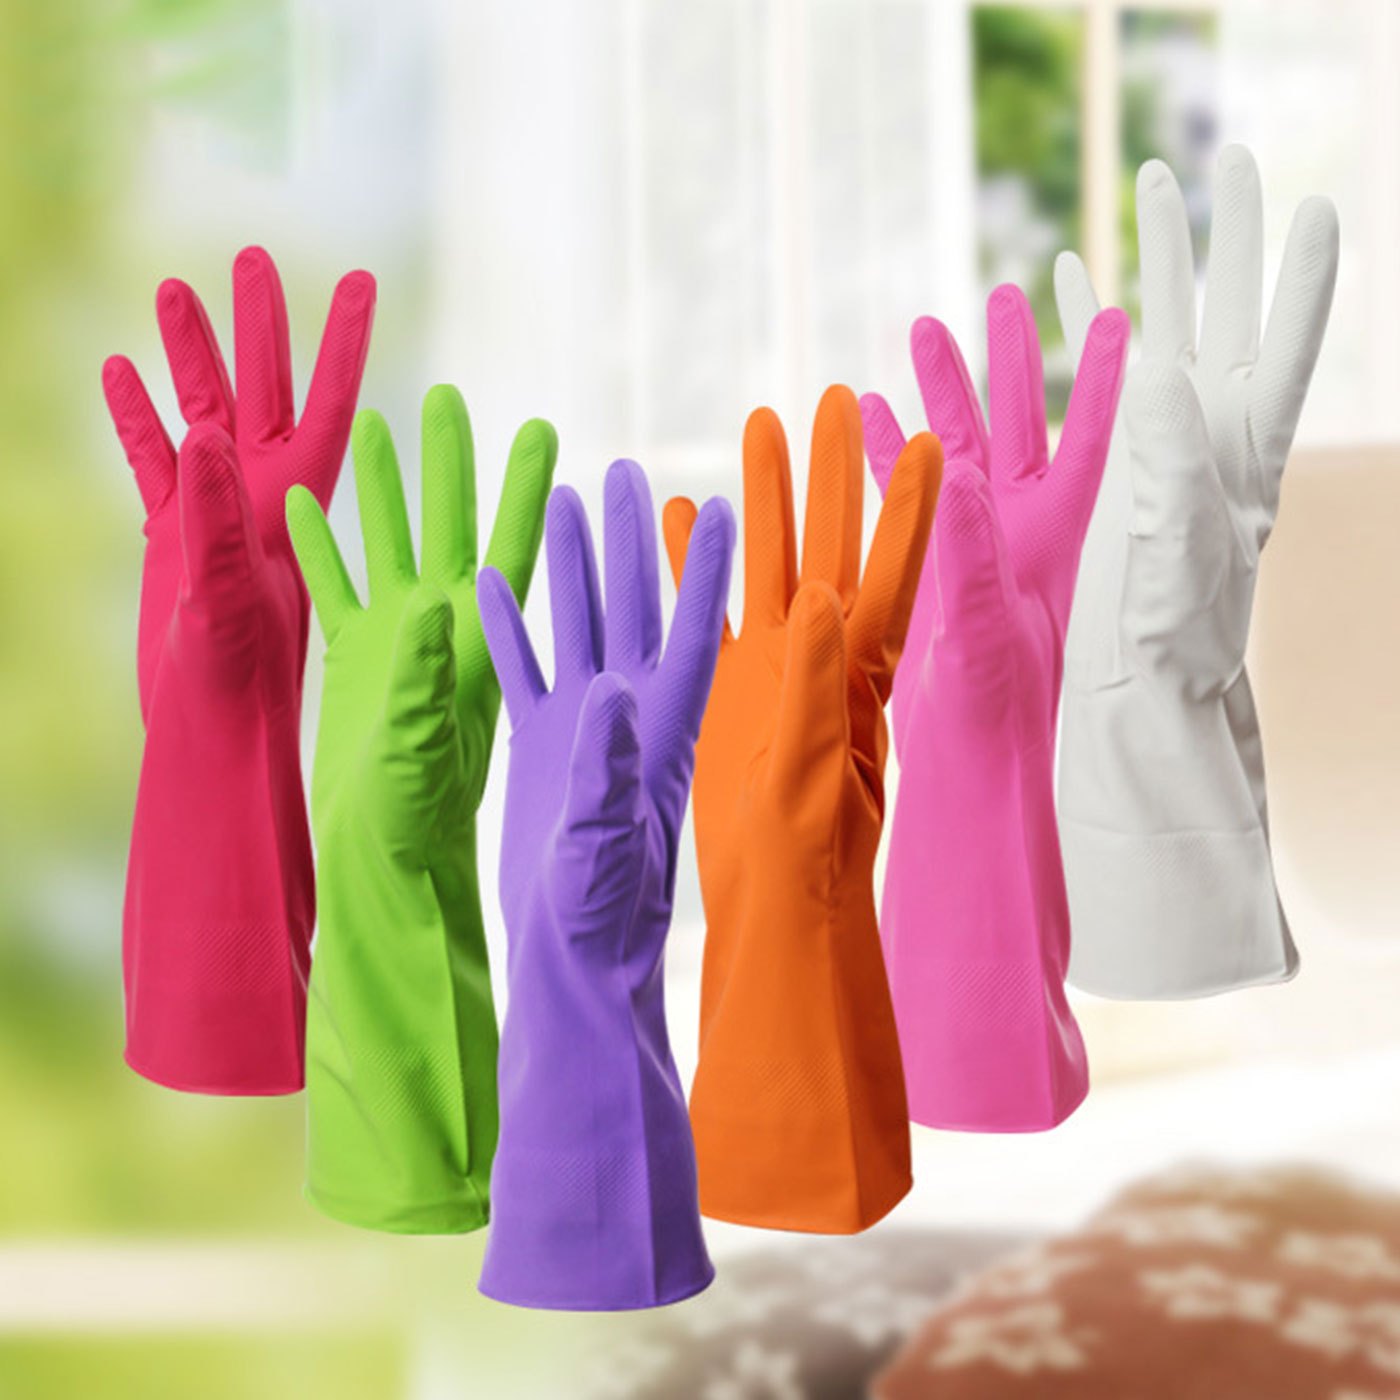 Gants en caoutchouc - Ménage Nettoyage Gants imprimé(Nettoyage ménager)  Convient pour laver les légumes/laver la